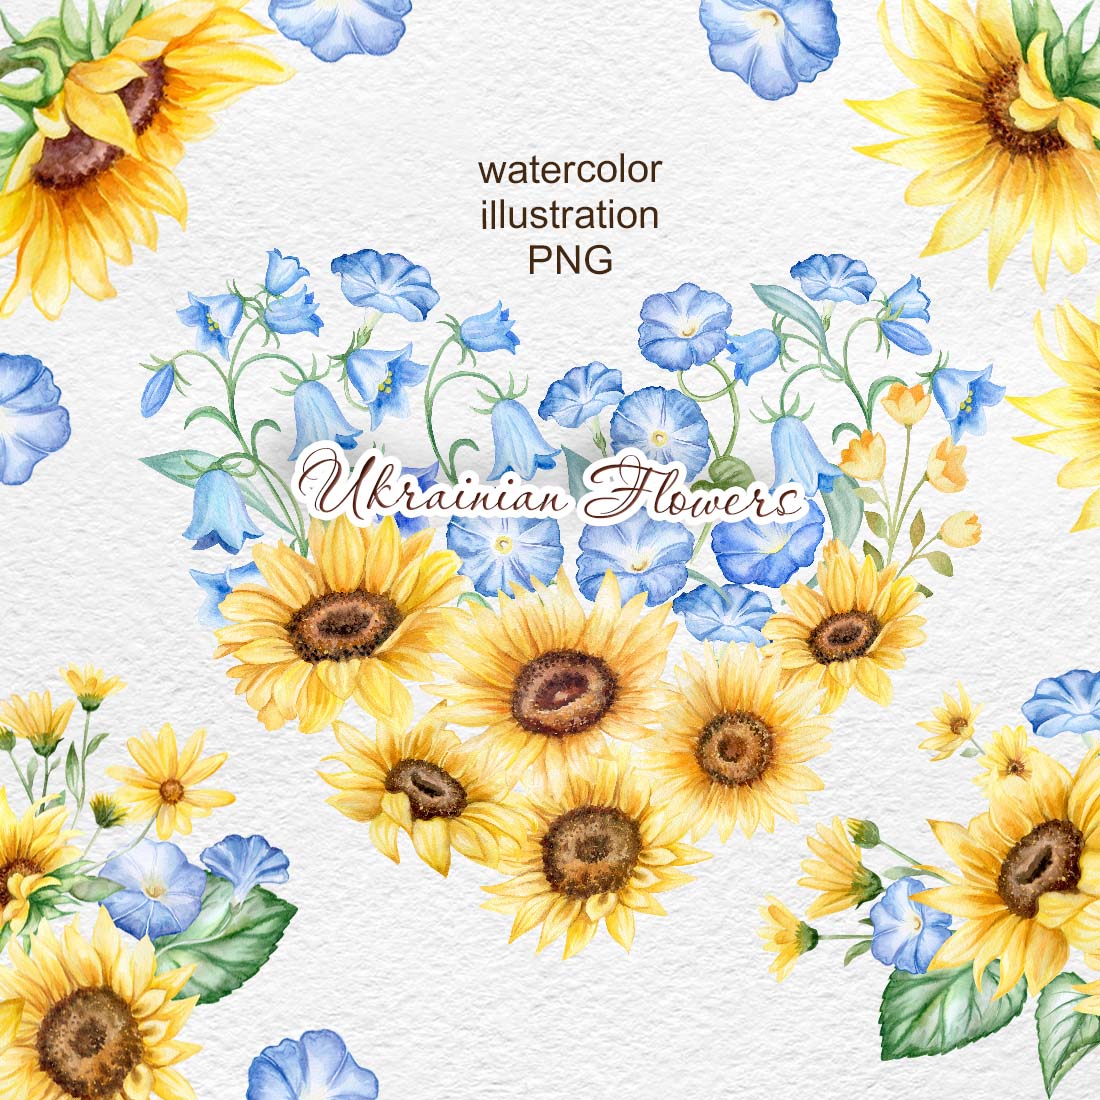 Ukraine Watercolor Flowers Clipart cove rimage.